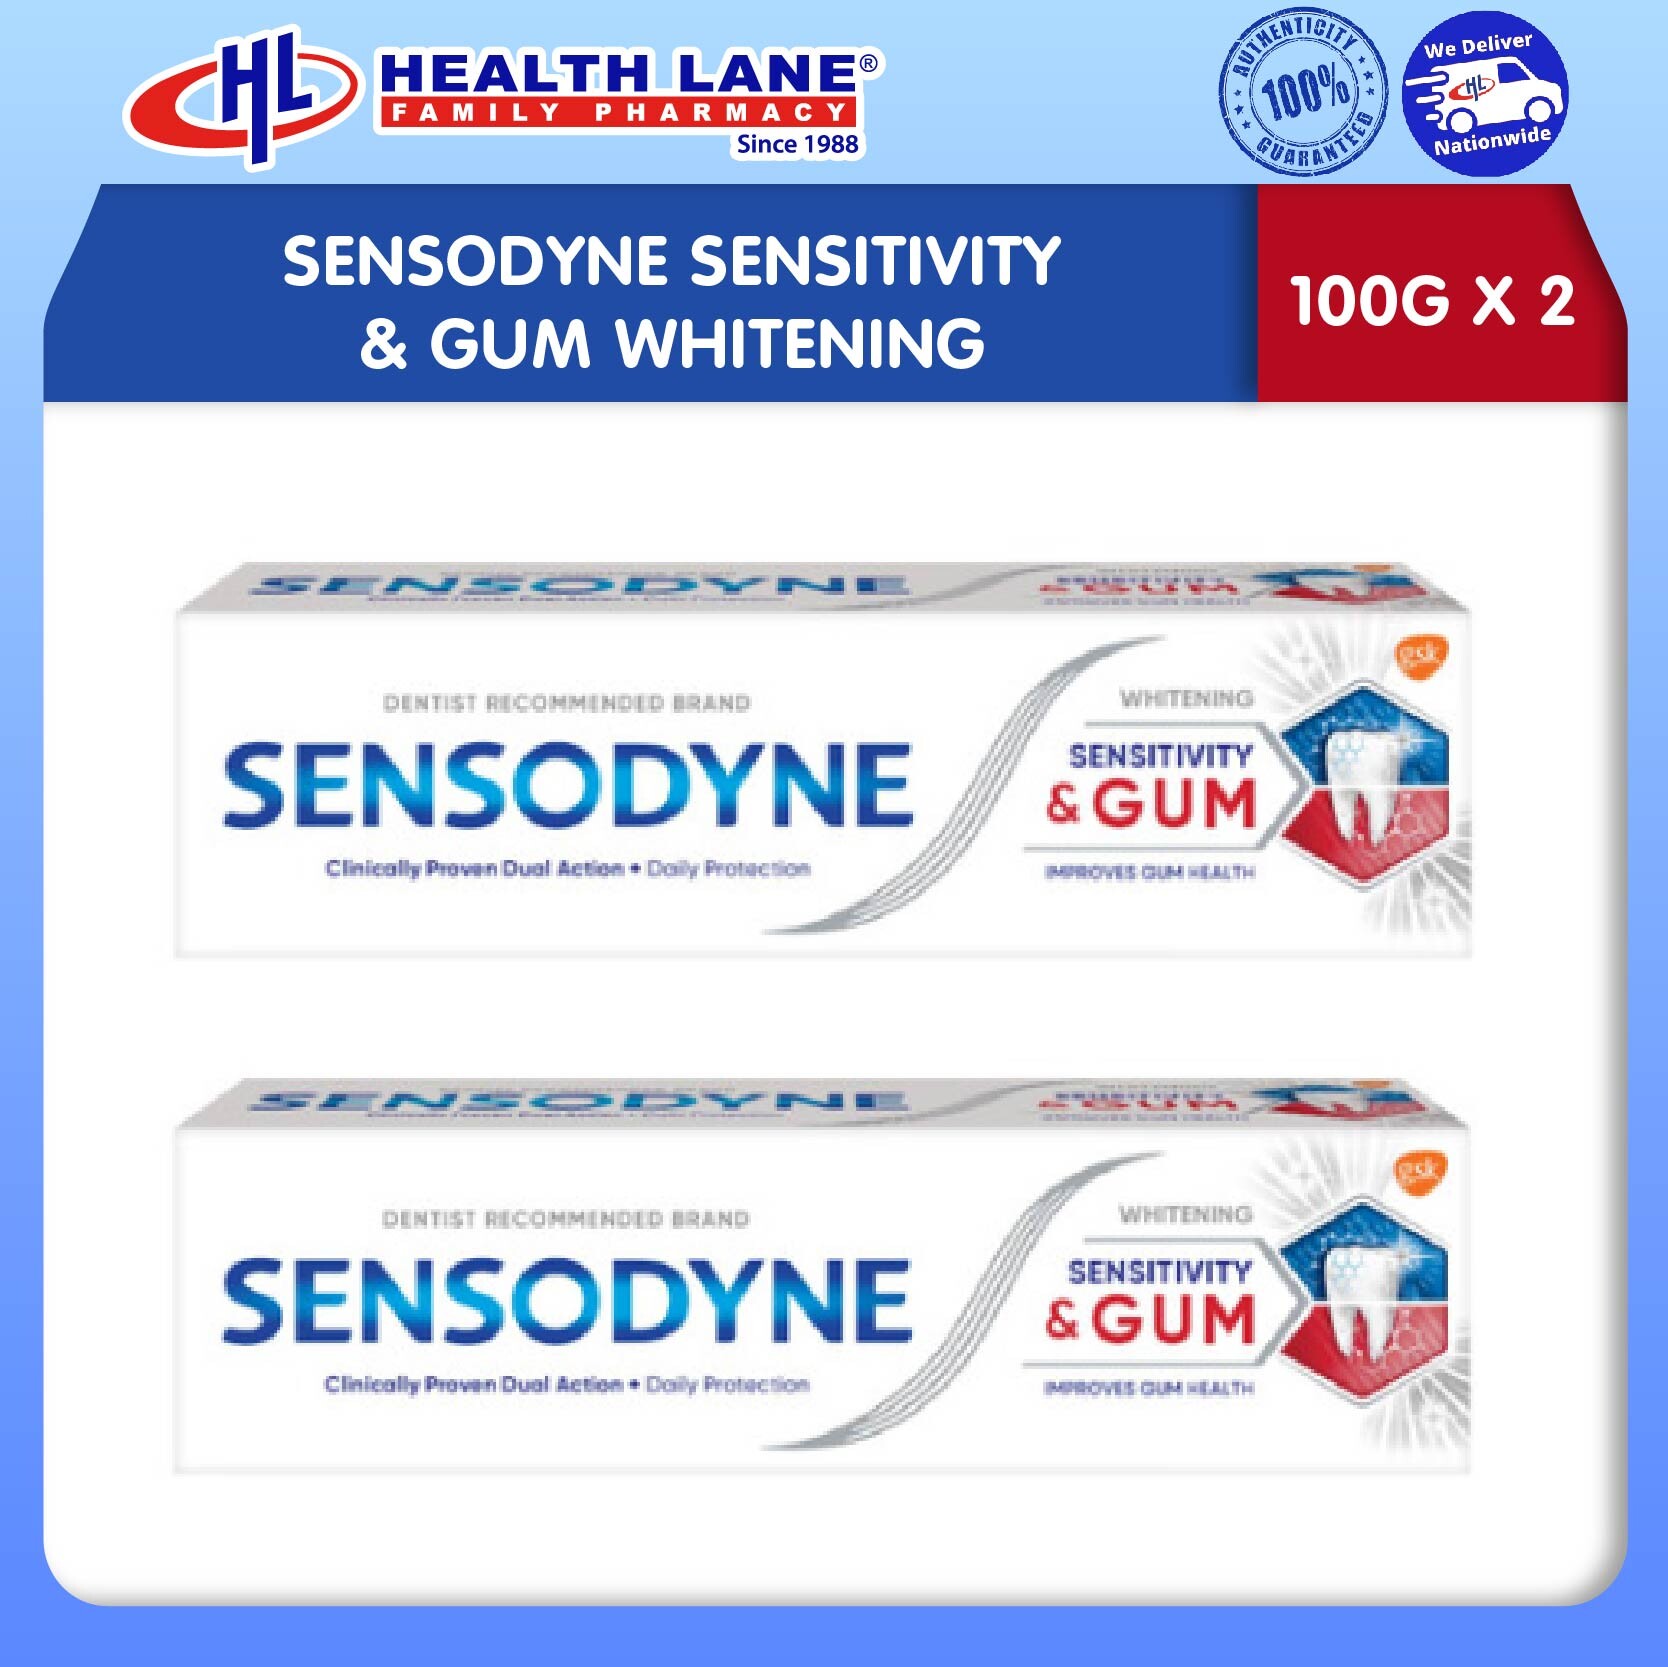 SENSODYNE SENSITIVITY & GUM WHITENING (100G X 2)